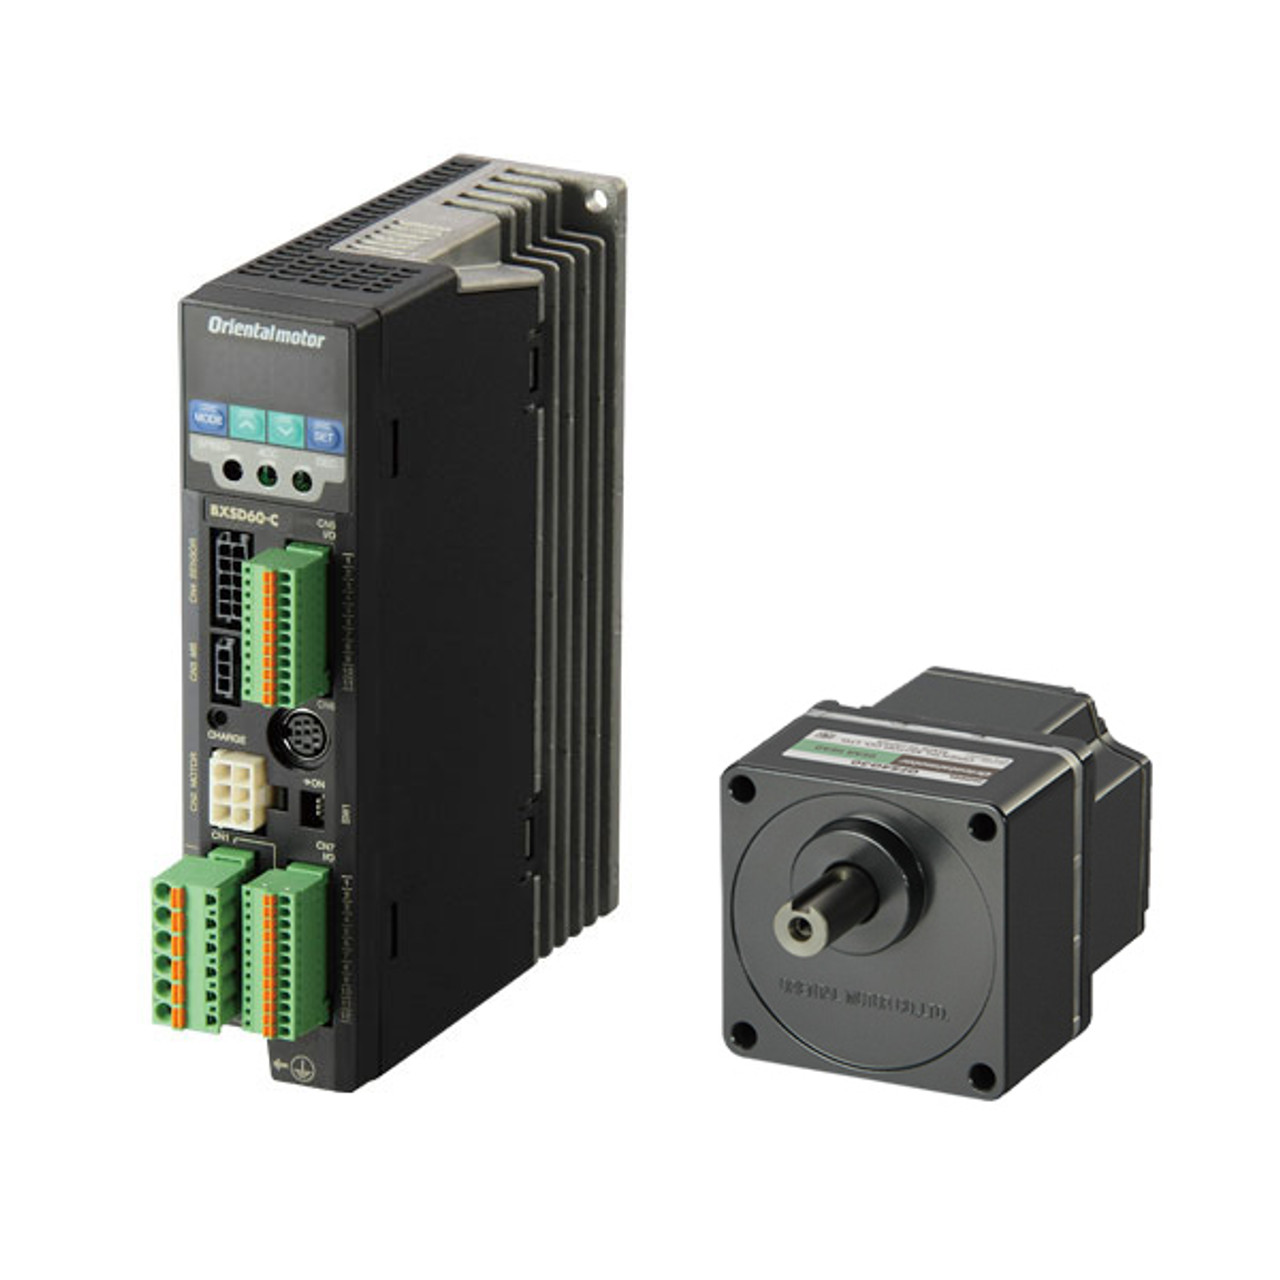 BXM230-200 / BXSD30-C2 - Product Image